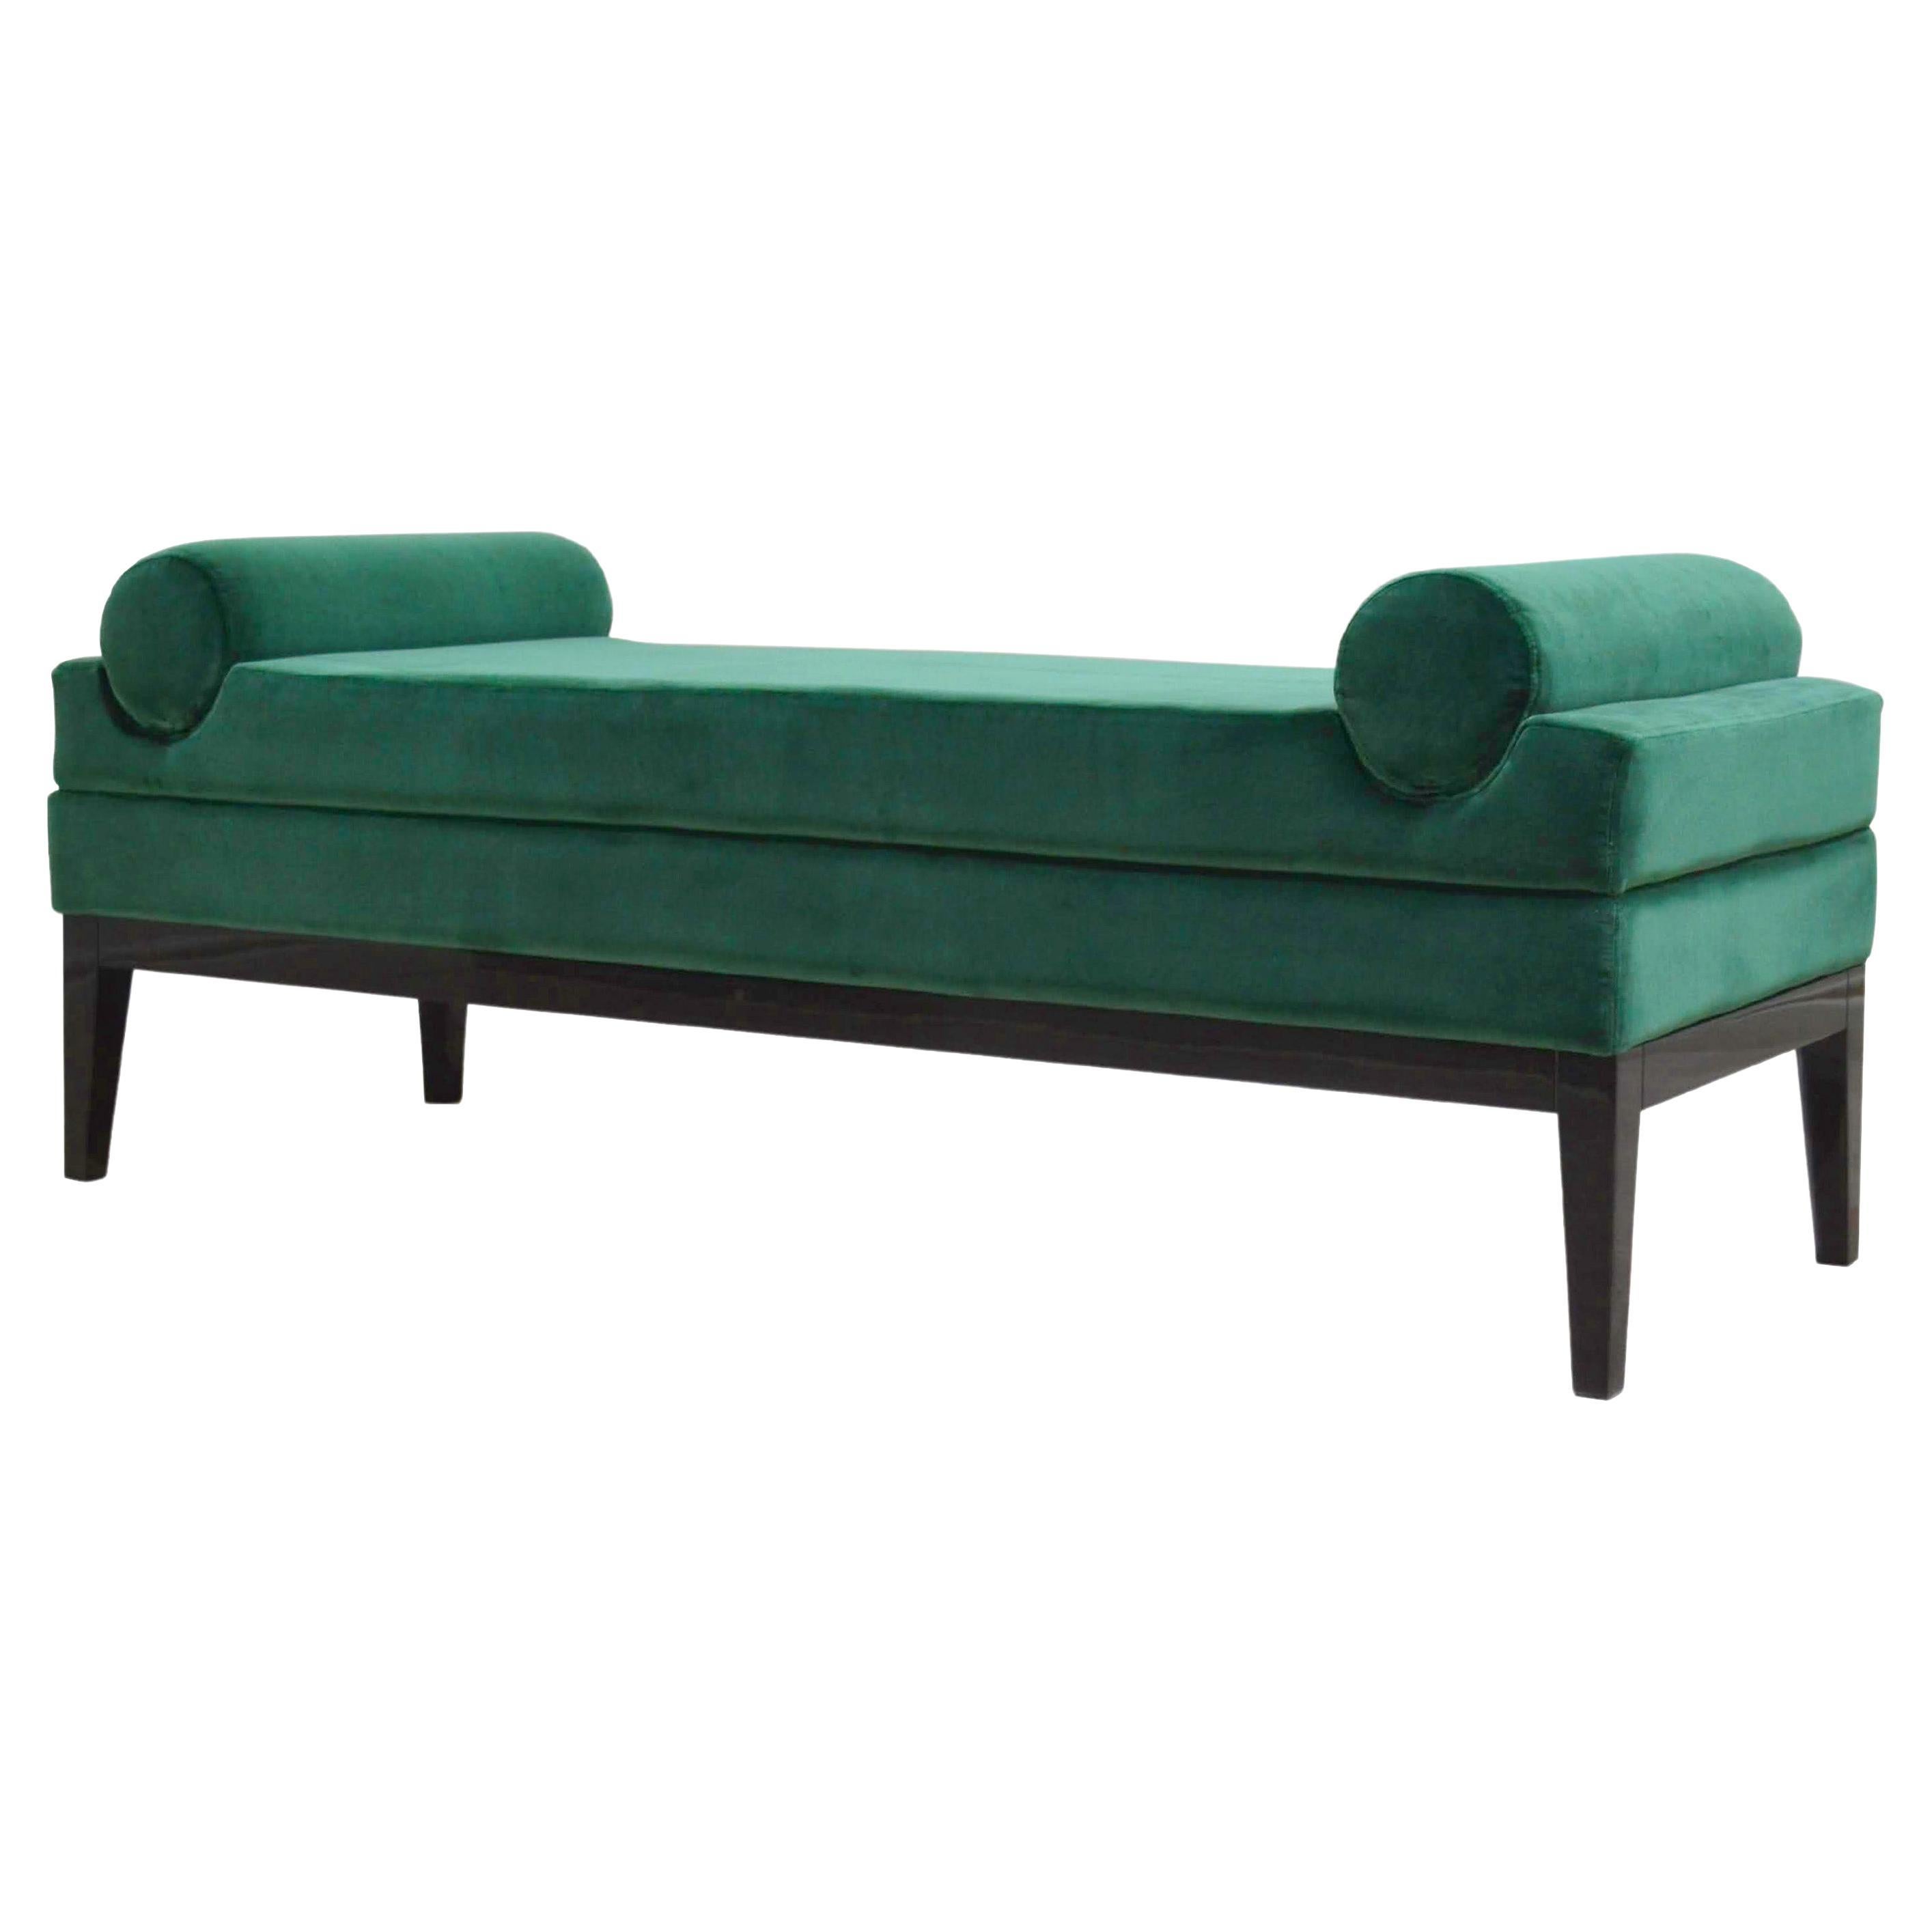 Italian Contemporary Upholstered Bench in Green Velvet Fabric For Sale